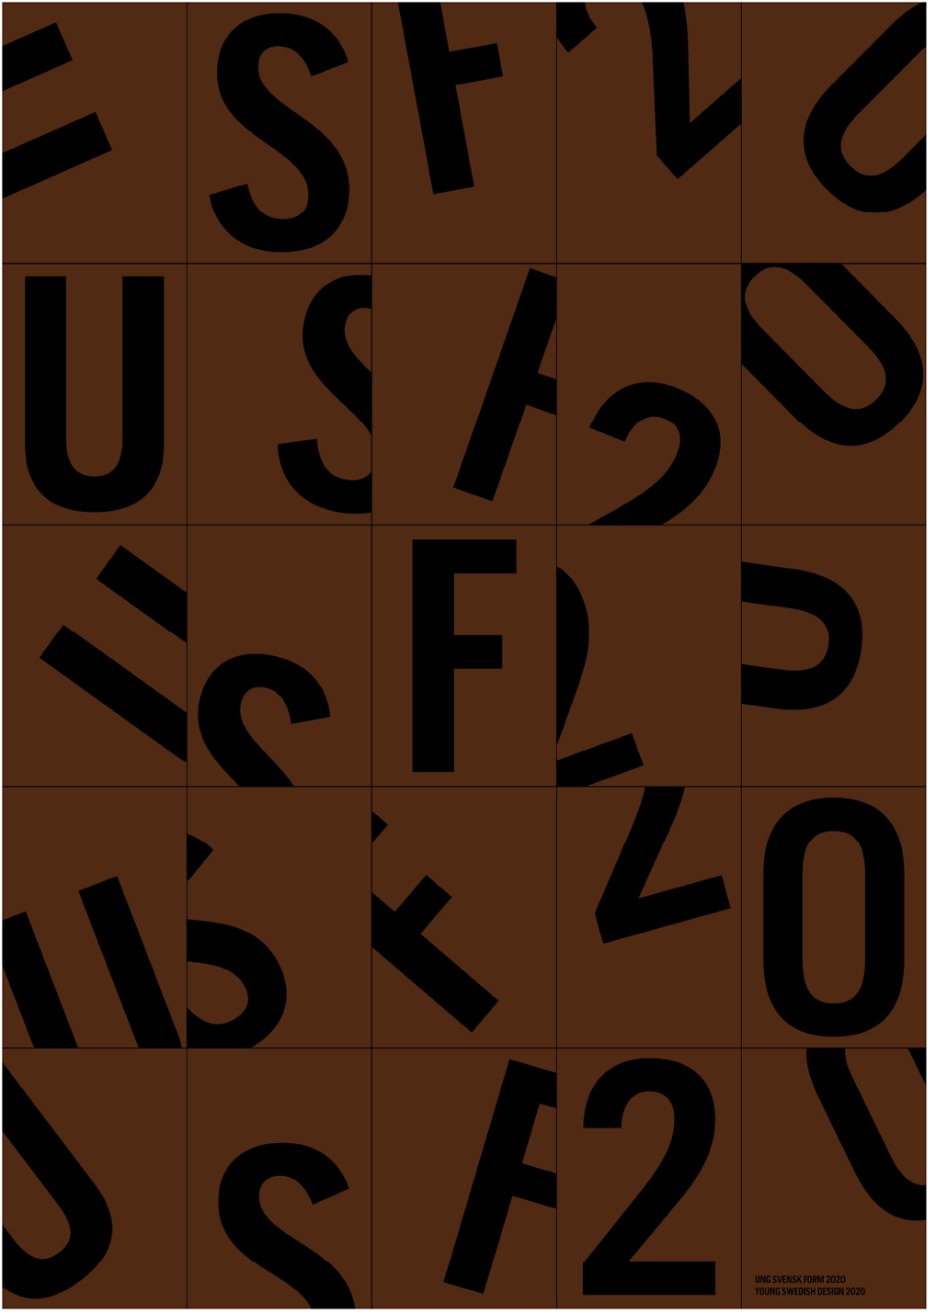 Braune Rechtecke, auf denen schwarze Buchstaben und Zahlen in unregelmäßiger, unvollständiger und chaotischer Weise aufgedruckt sind.